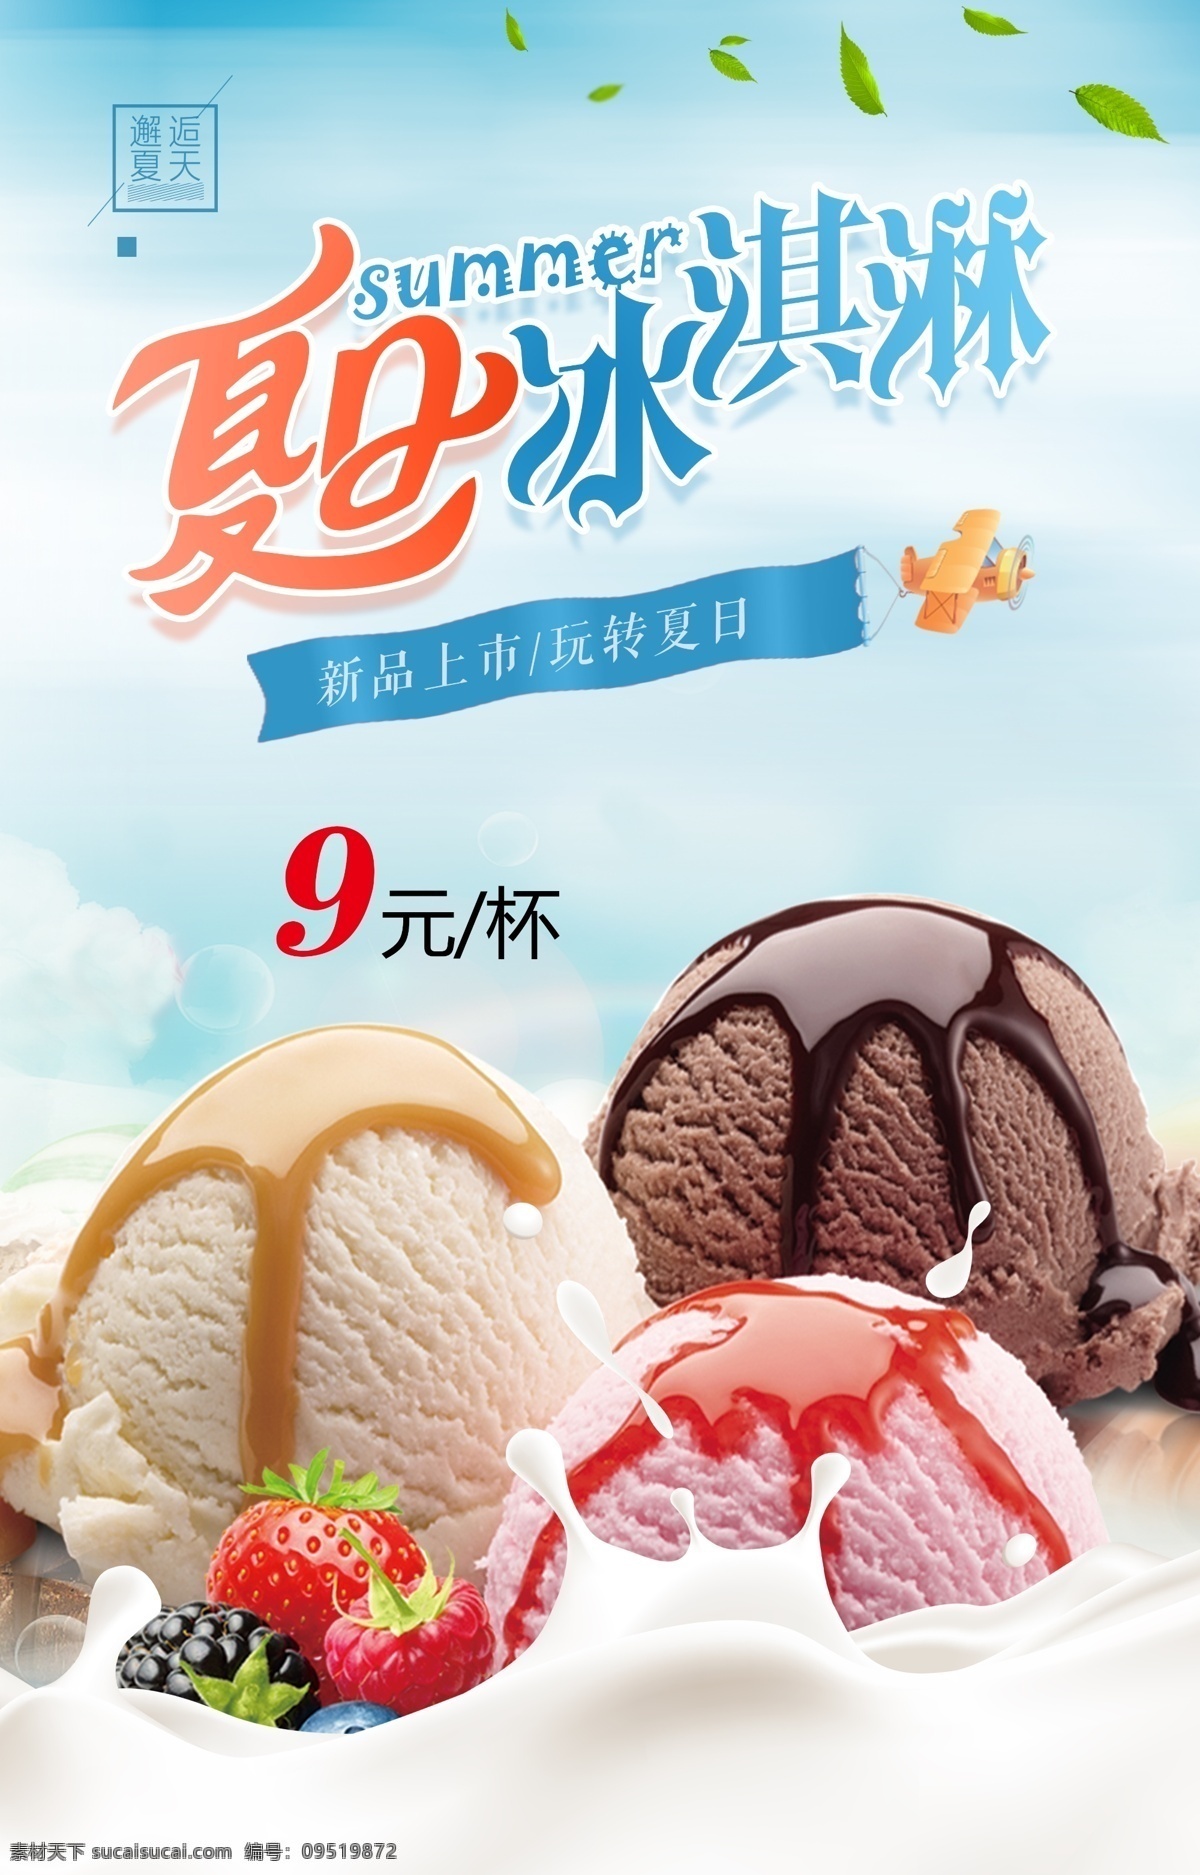 冰淇淋海报 冰淇淋 冰激凌 夏季海报 冰淇淋球 邂逅夏天 新品上市 玩转夏日 小吃 夏天